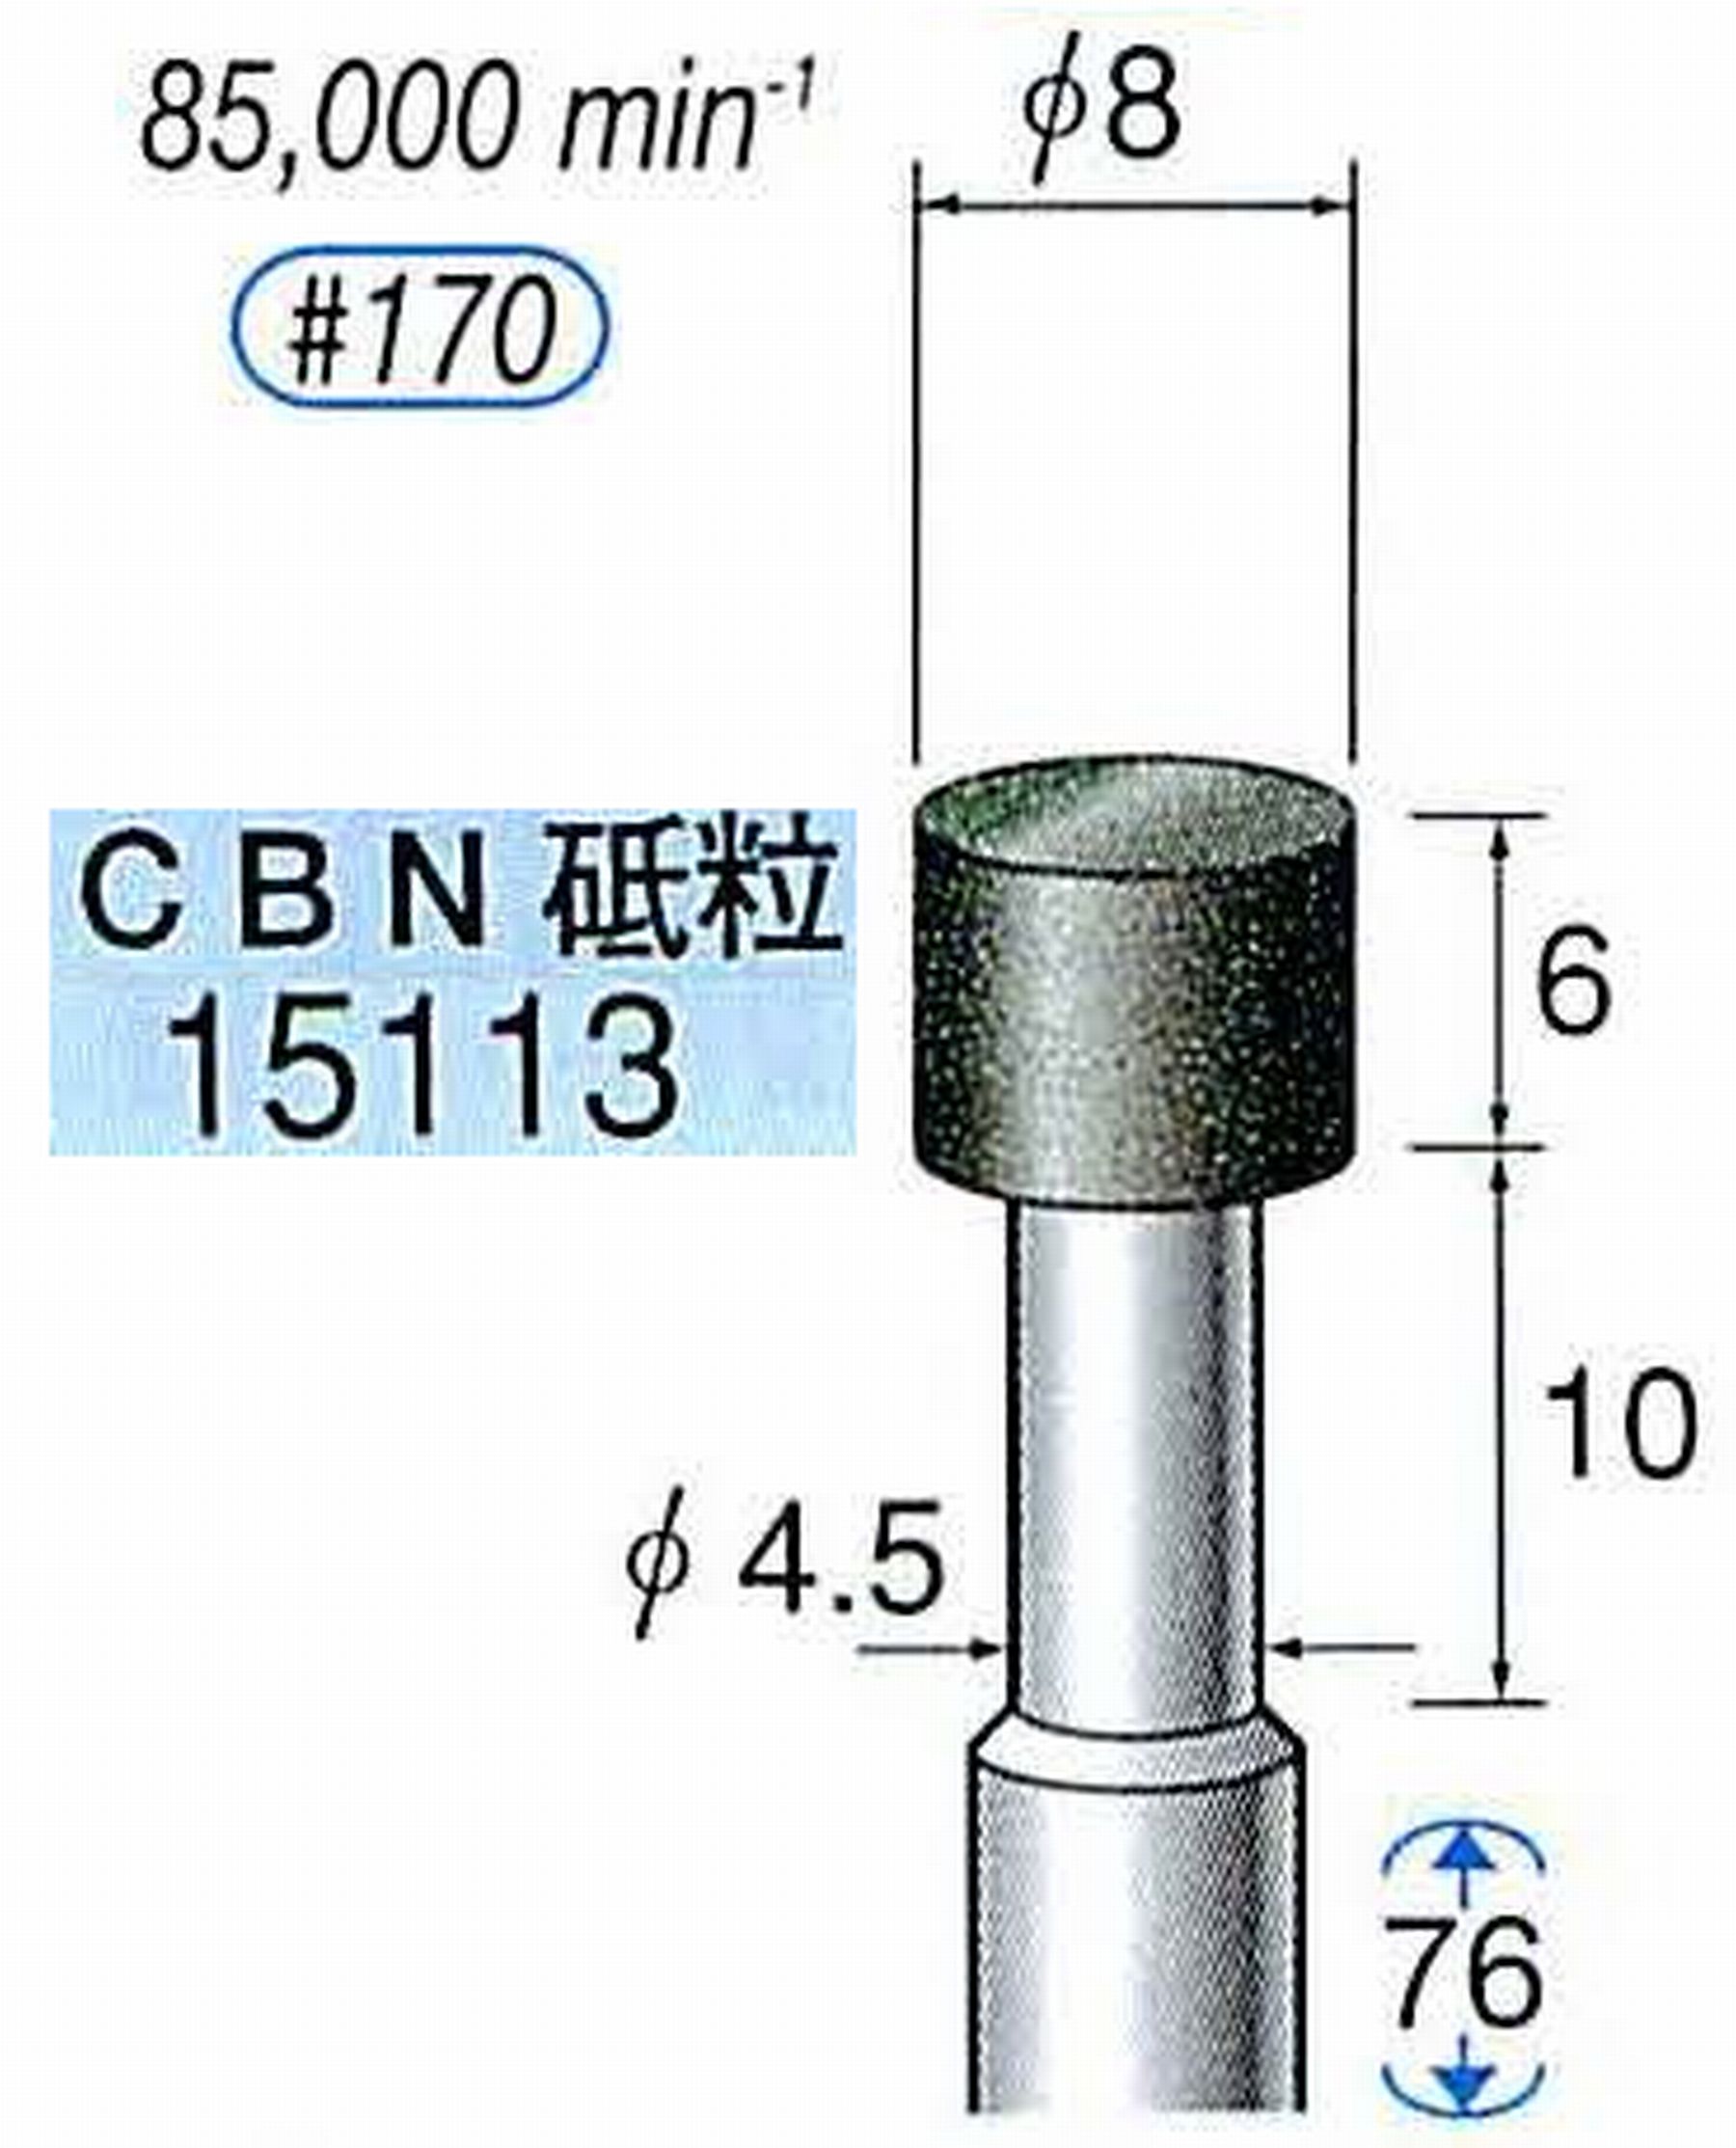 ナカニシ/NAKANISHI レジノイドダイヤモンド CBN砥粒 軸径(シャンク)φ6.0mm 15113